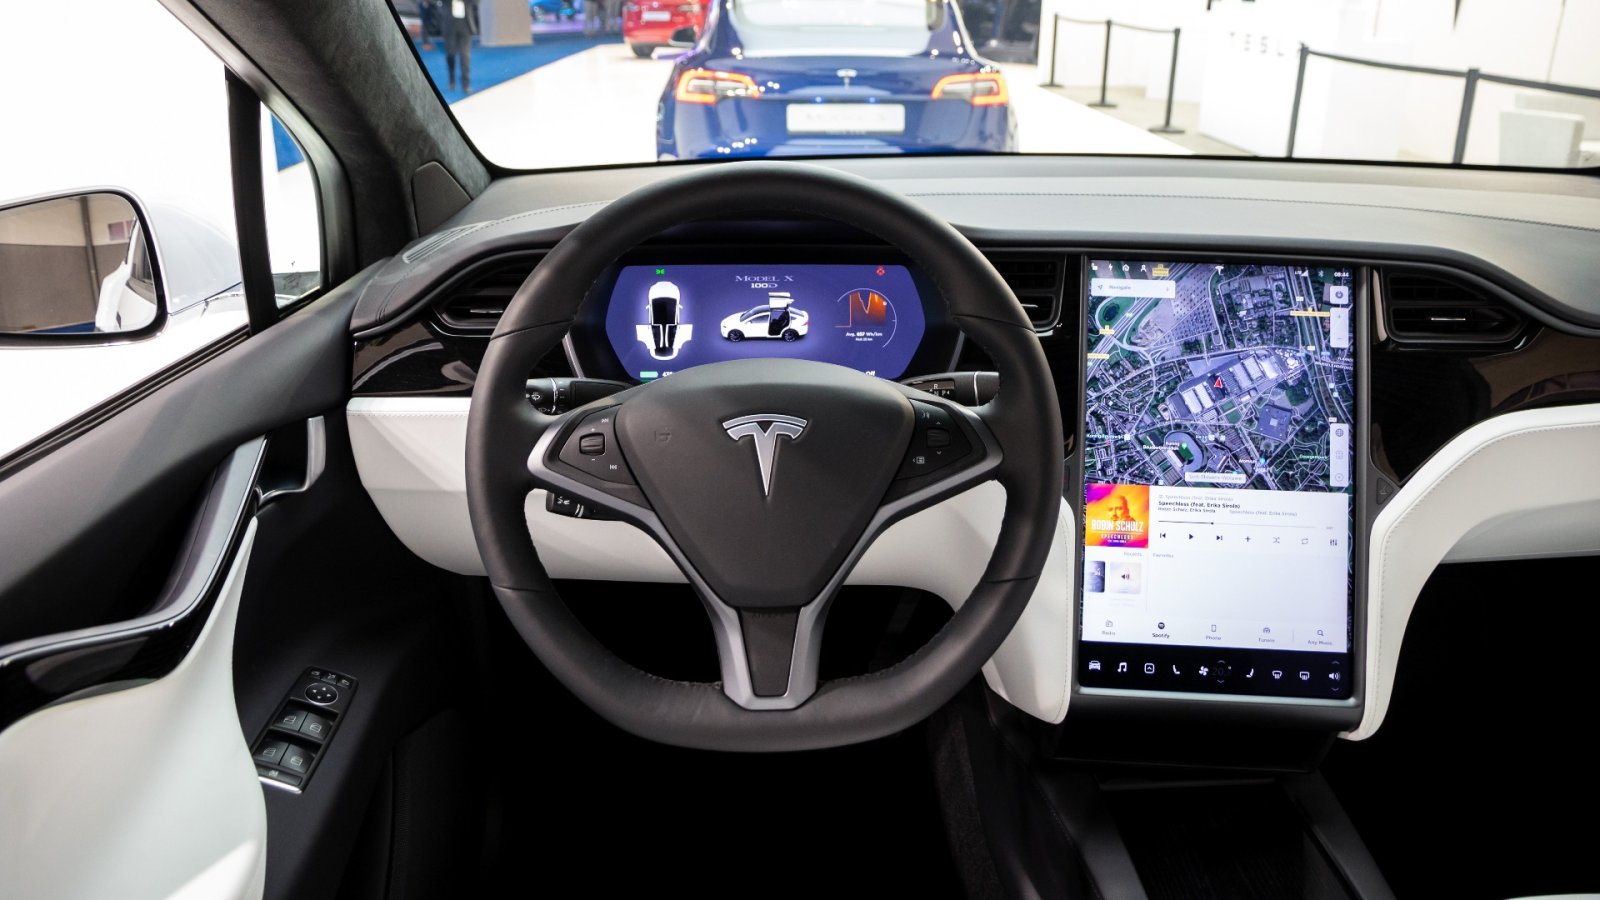 Hvad er problemet med Tesla-biler, og hvorfor anses softwaren for farlig?